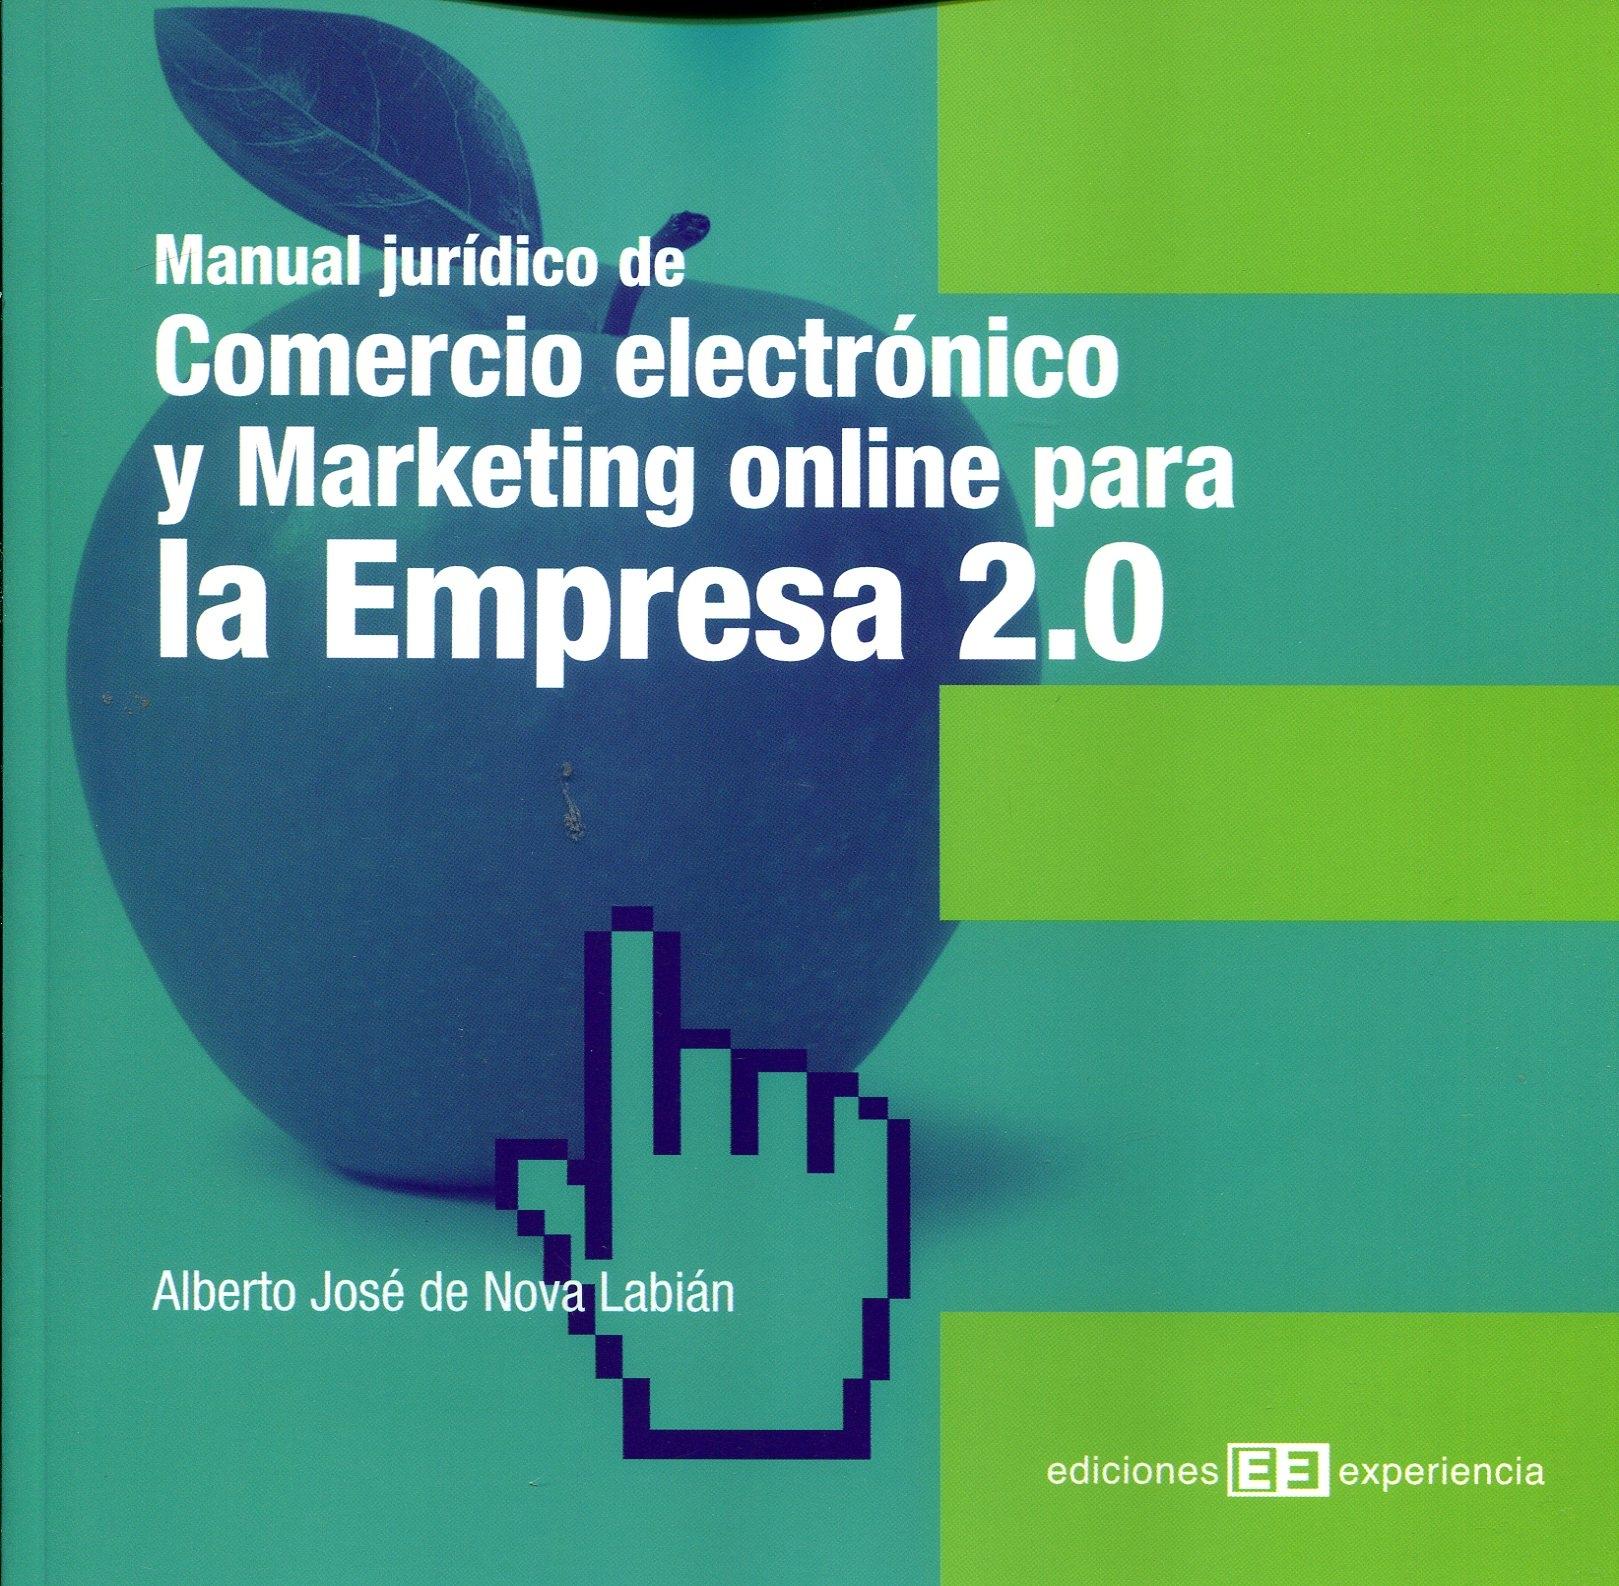 Manual jurídico de Comercio electrónico y Marketing online para la Empresa 2.0